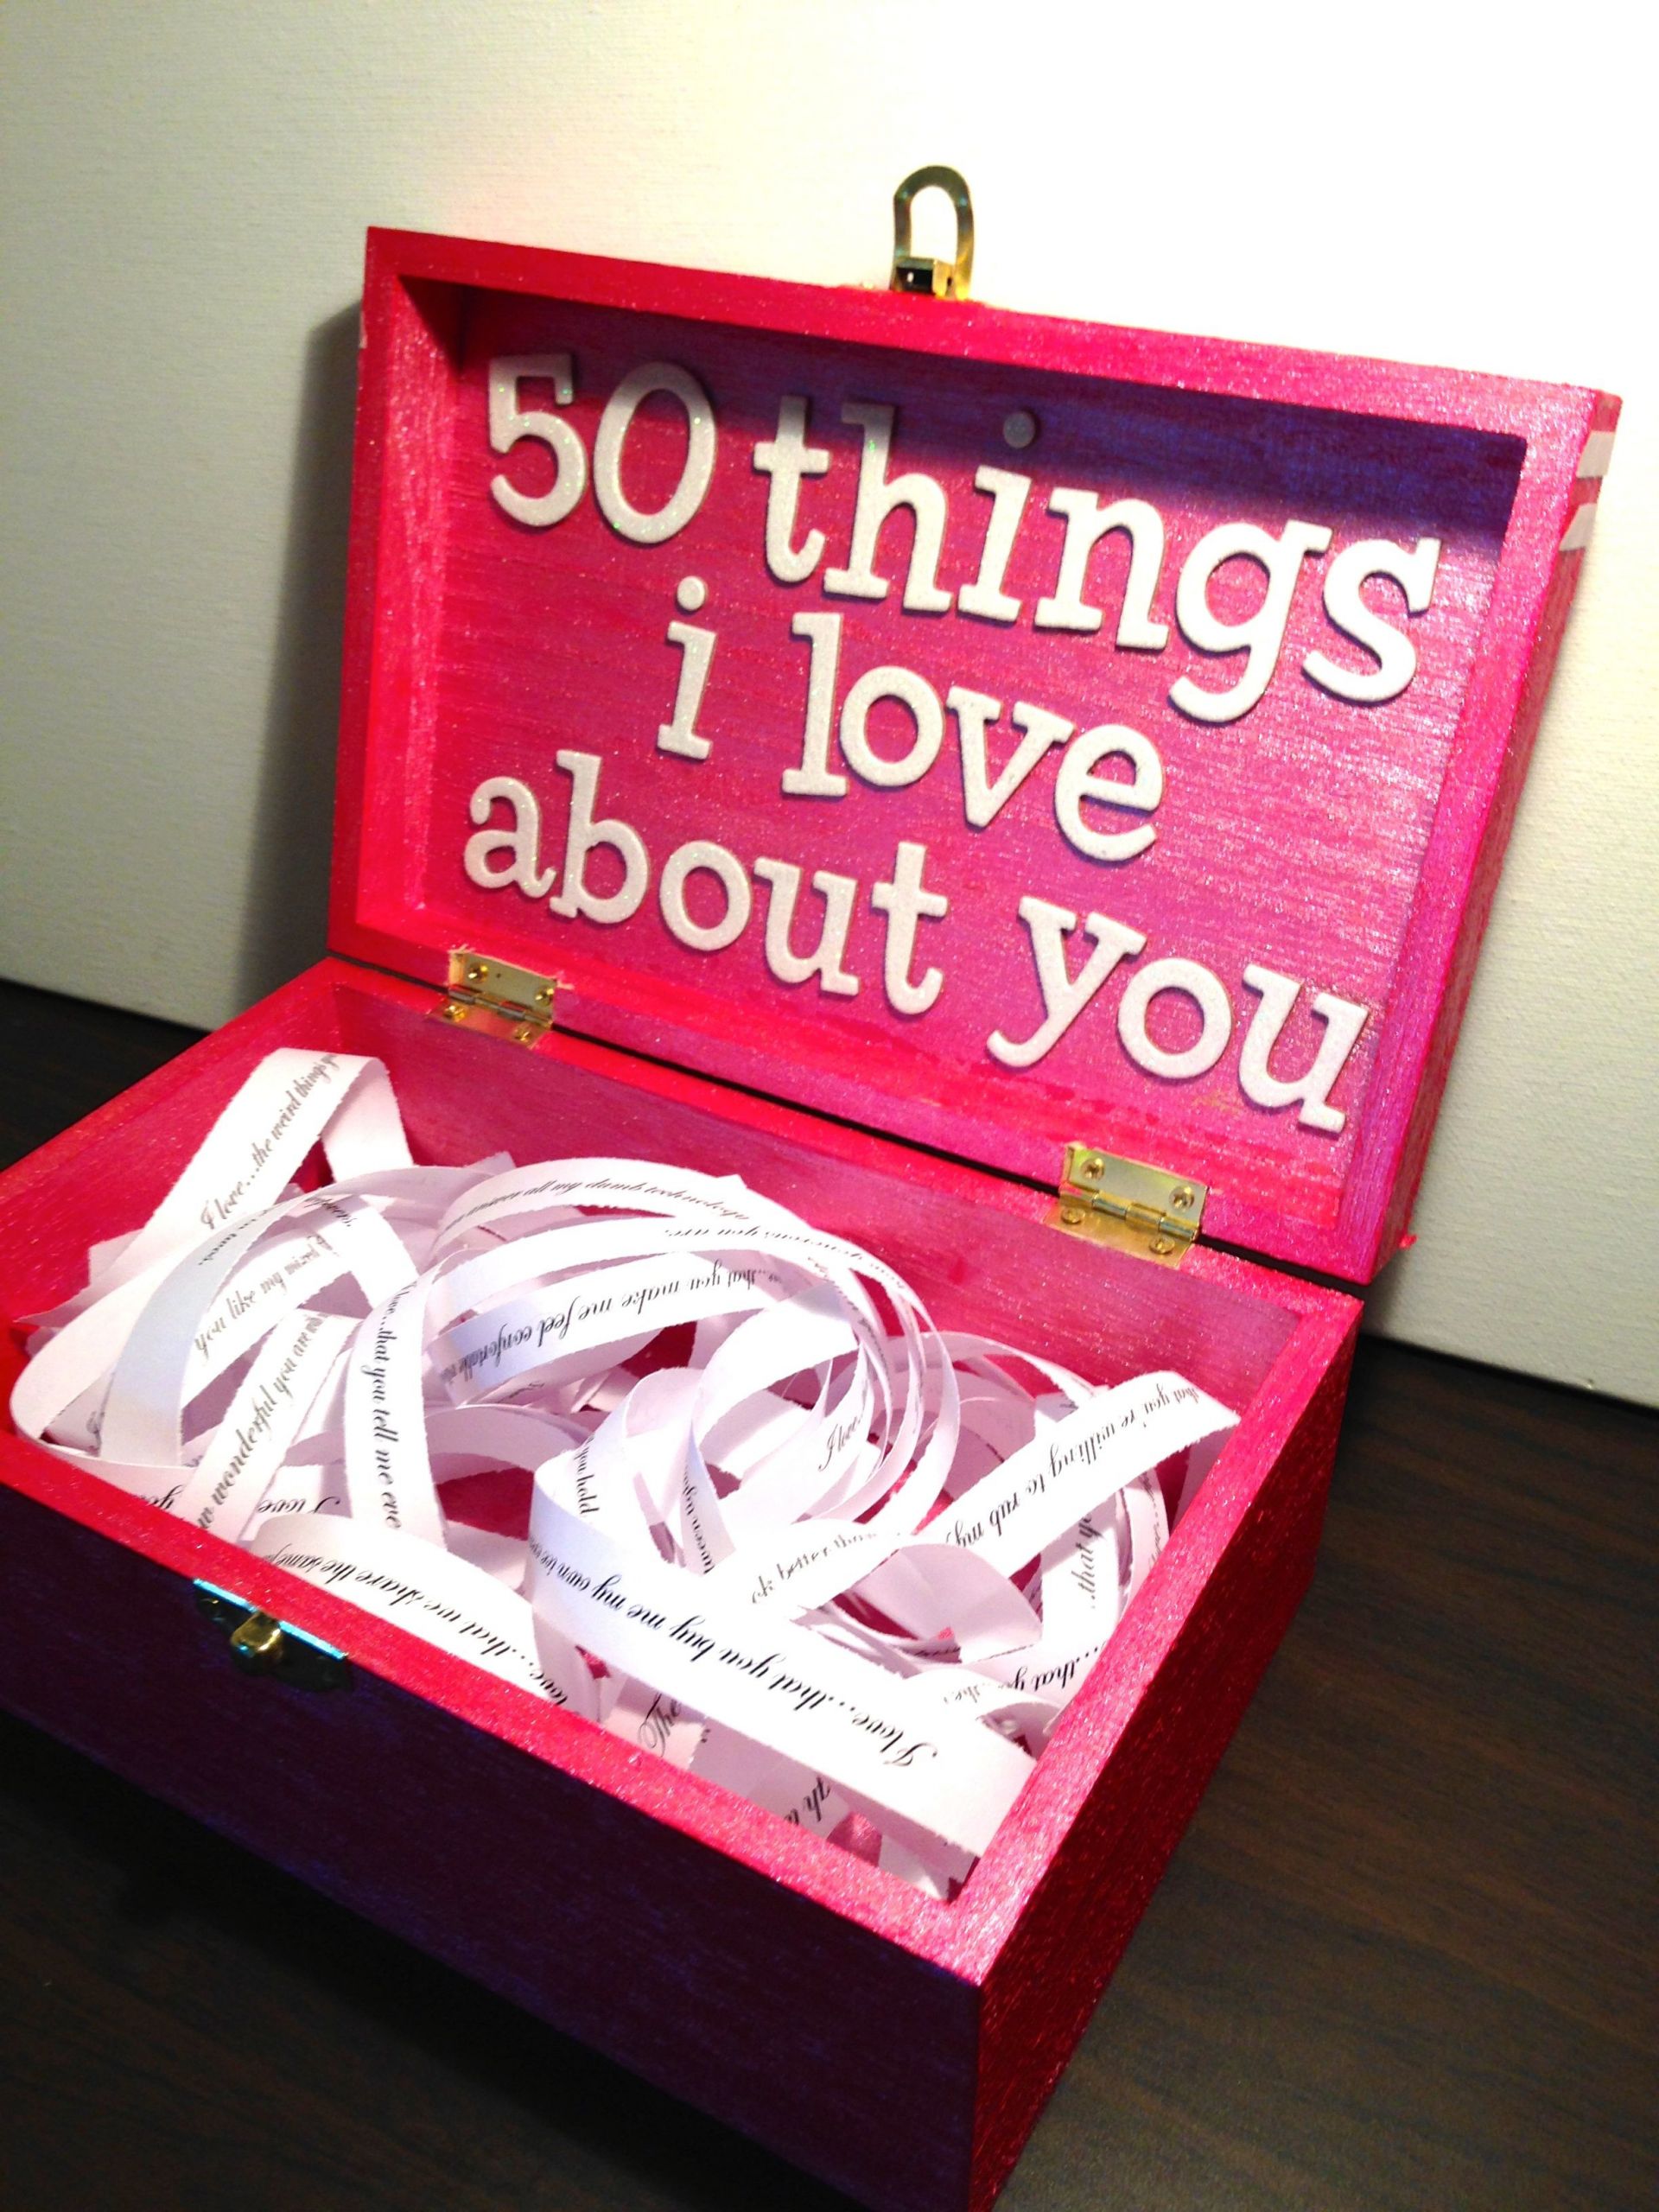 Cool Gift Ideas For Girlfriends
 Boyfriend Girlfriend t ideas for birthday valentine